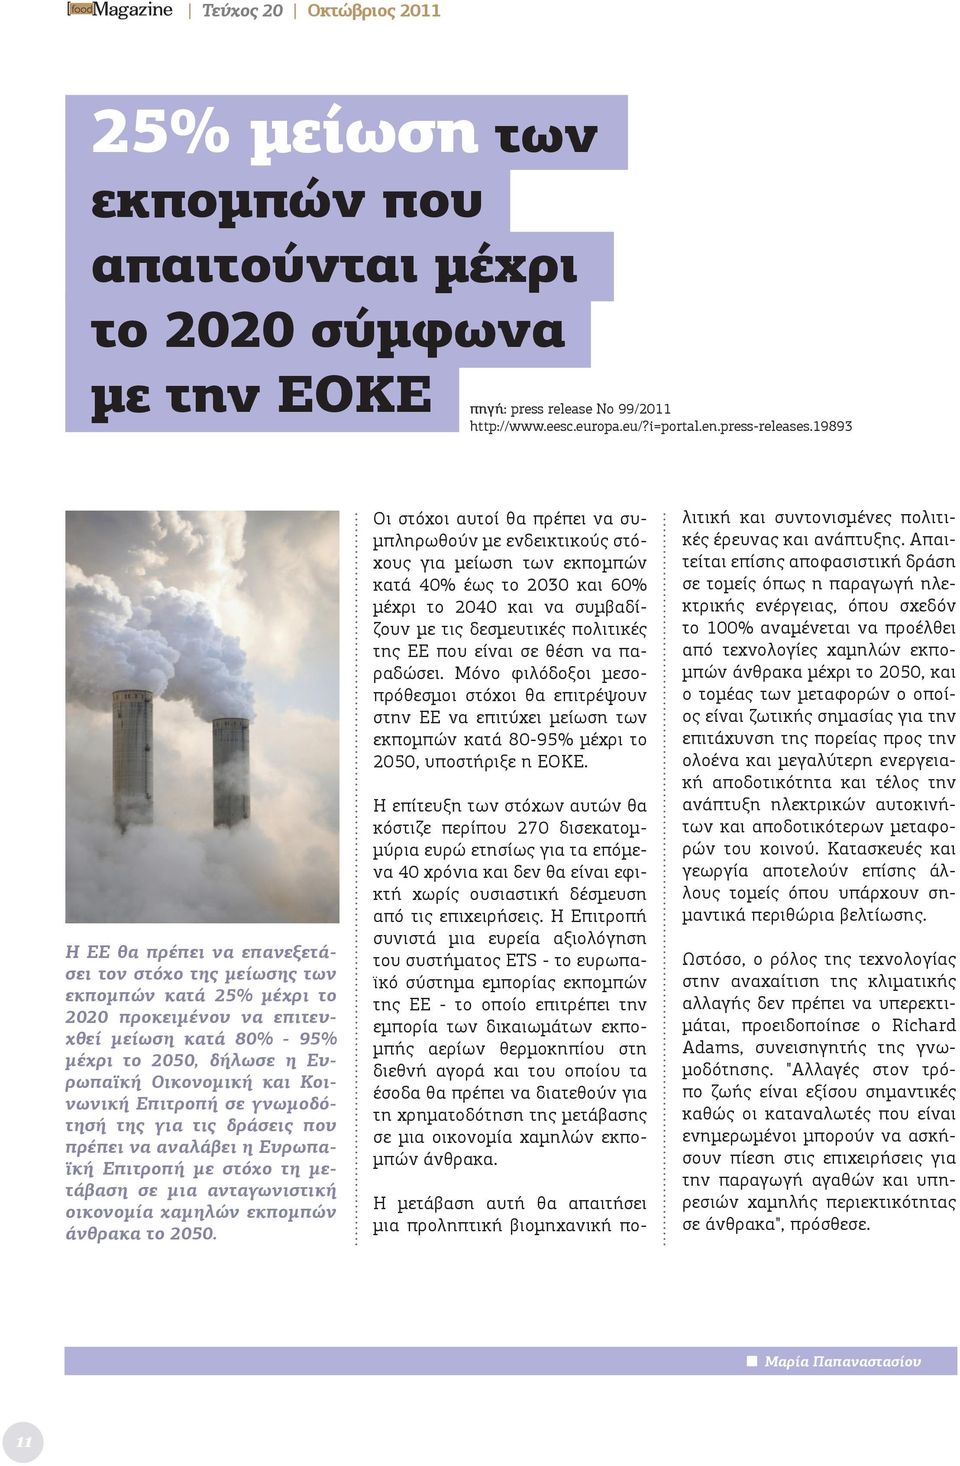 Κοινωνική Επιτροπή σε γνωμοδότησή της για τις δράσεις που πρέπει να αναλάβει η Ευρωπαϊκή Επιτροπή με στόχο τη μετάβαση σε μια ανταγωνιστική οικονομία χαμηλών εκπομπών άνθρακα το 2050.